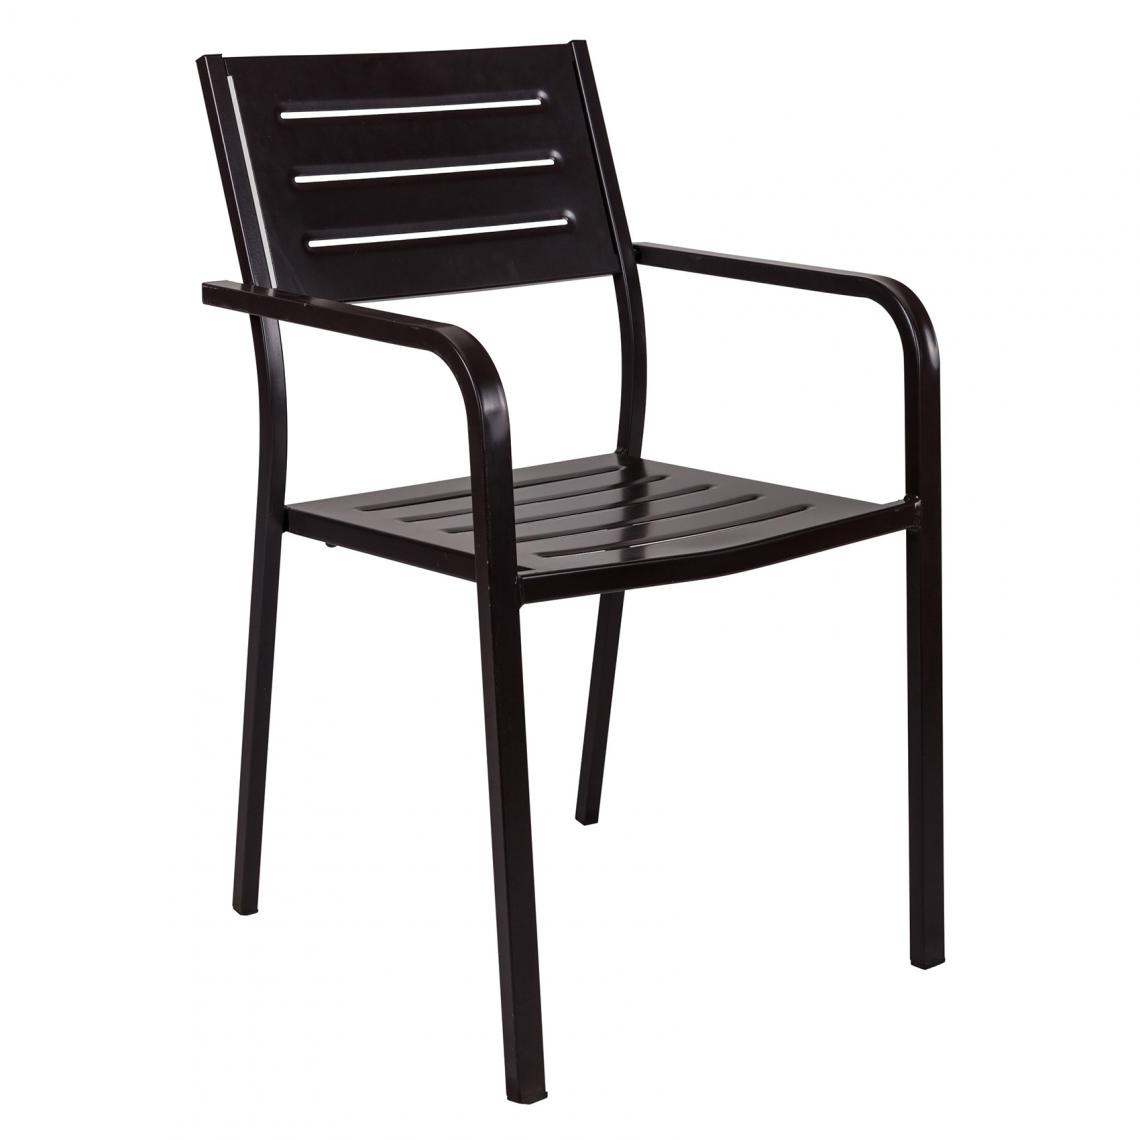 Alter - Chaise empilable en acier avec accoudoirs, couleur moka, 54 x 58 x h84 cm - Chaises